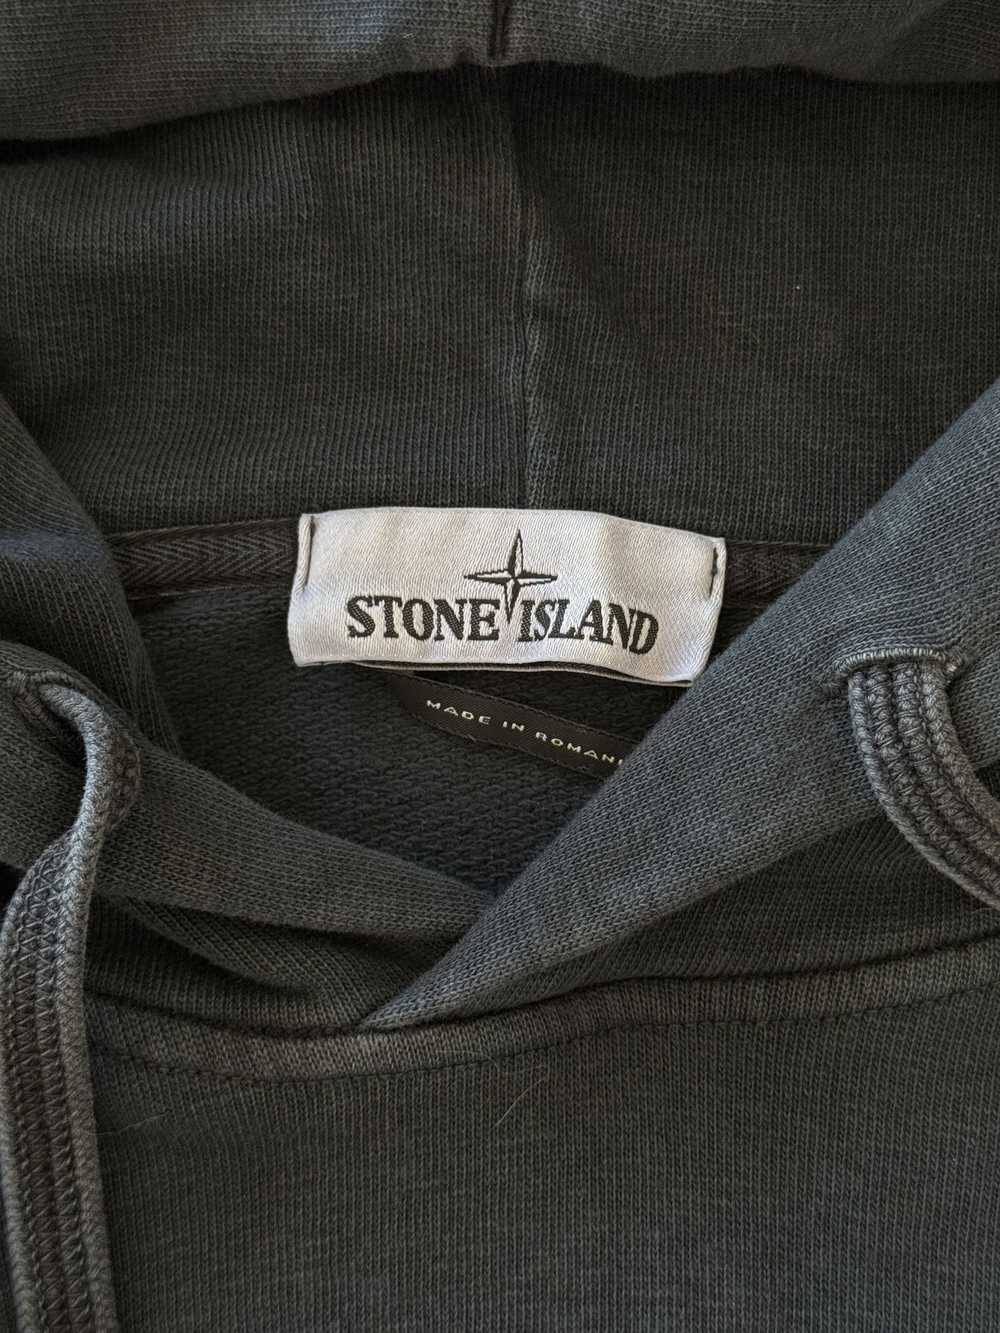 Stone Island STONE ISLAND GARMENT DYED OLD EFFECT… - image 3